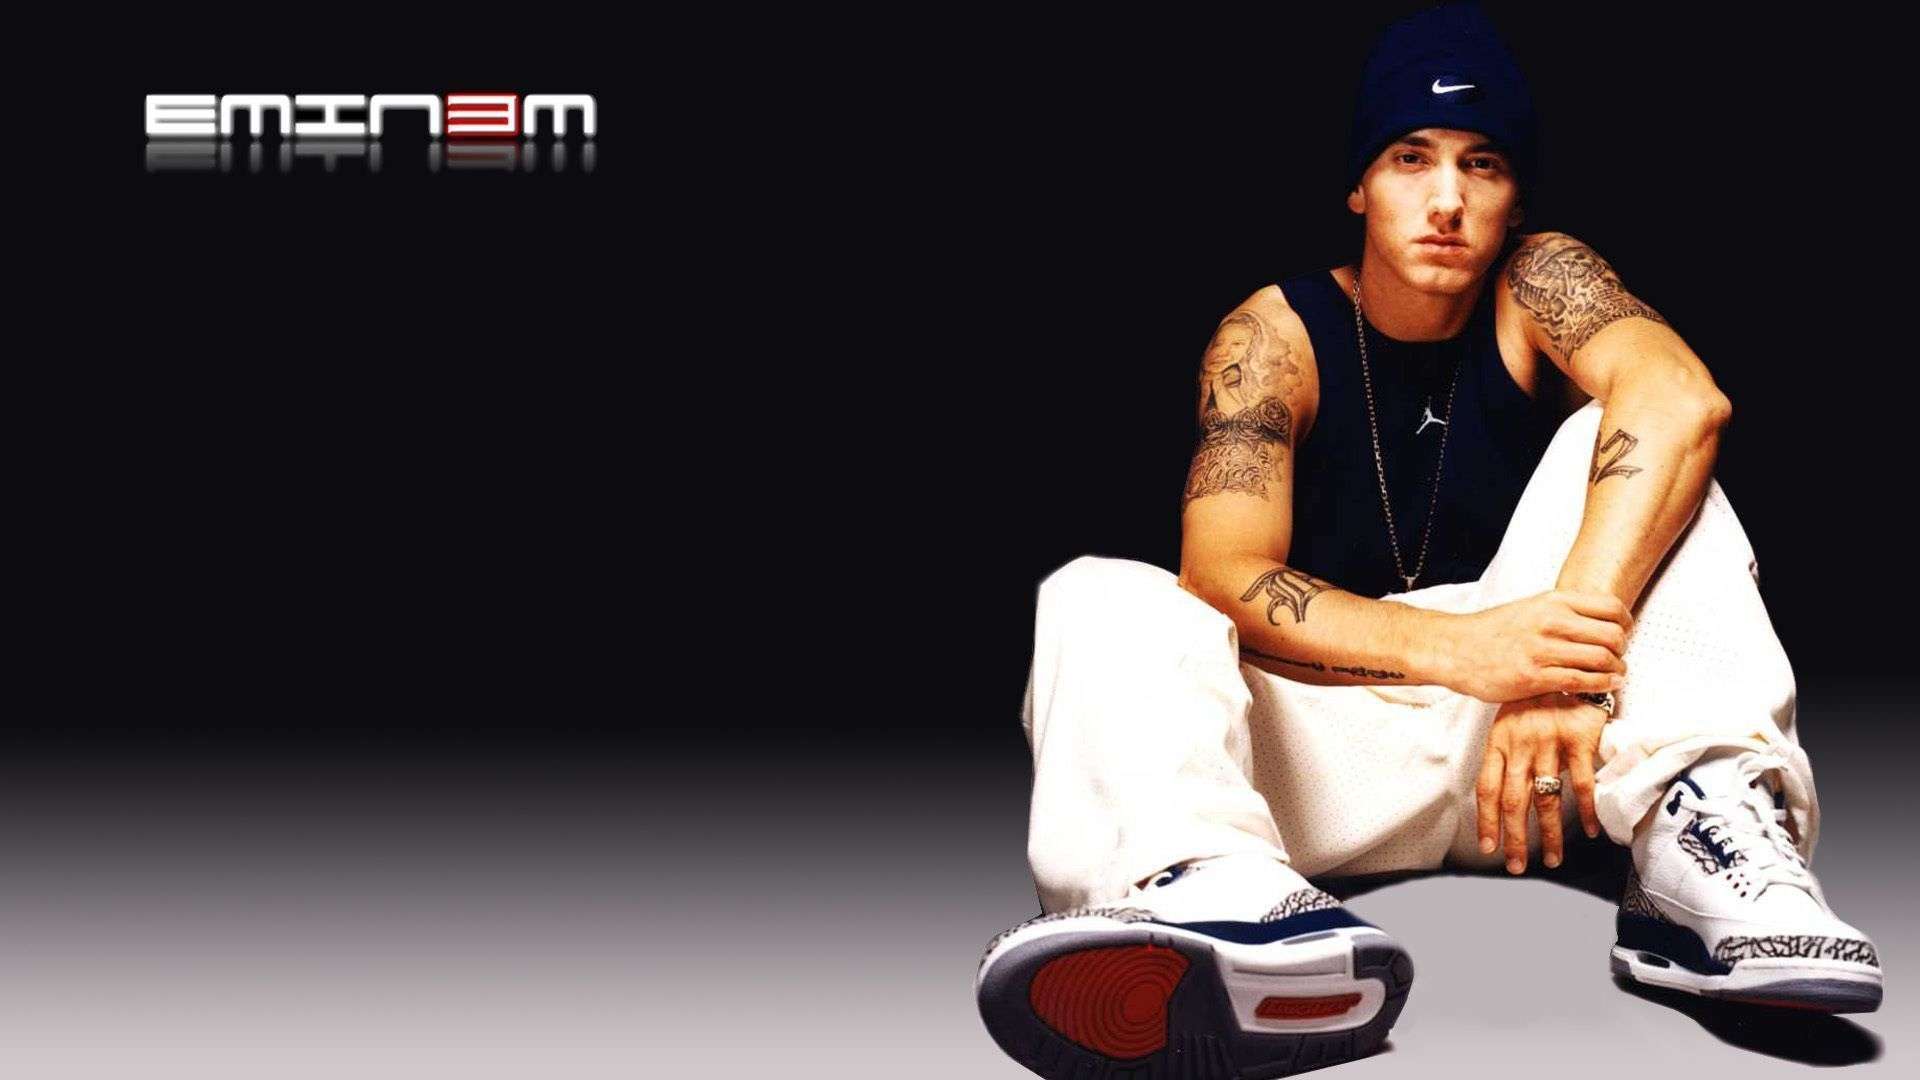 Now Eminem HD Wallpaper 1080p Read Description Info S And